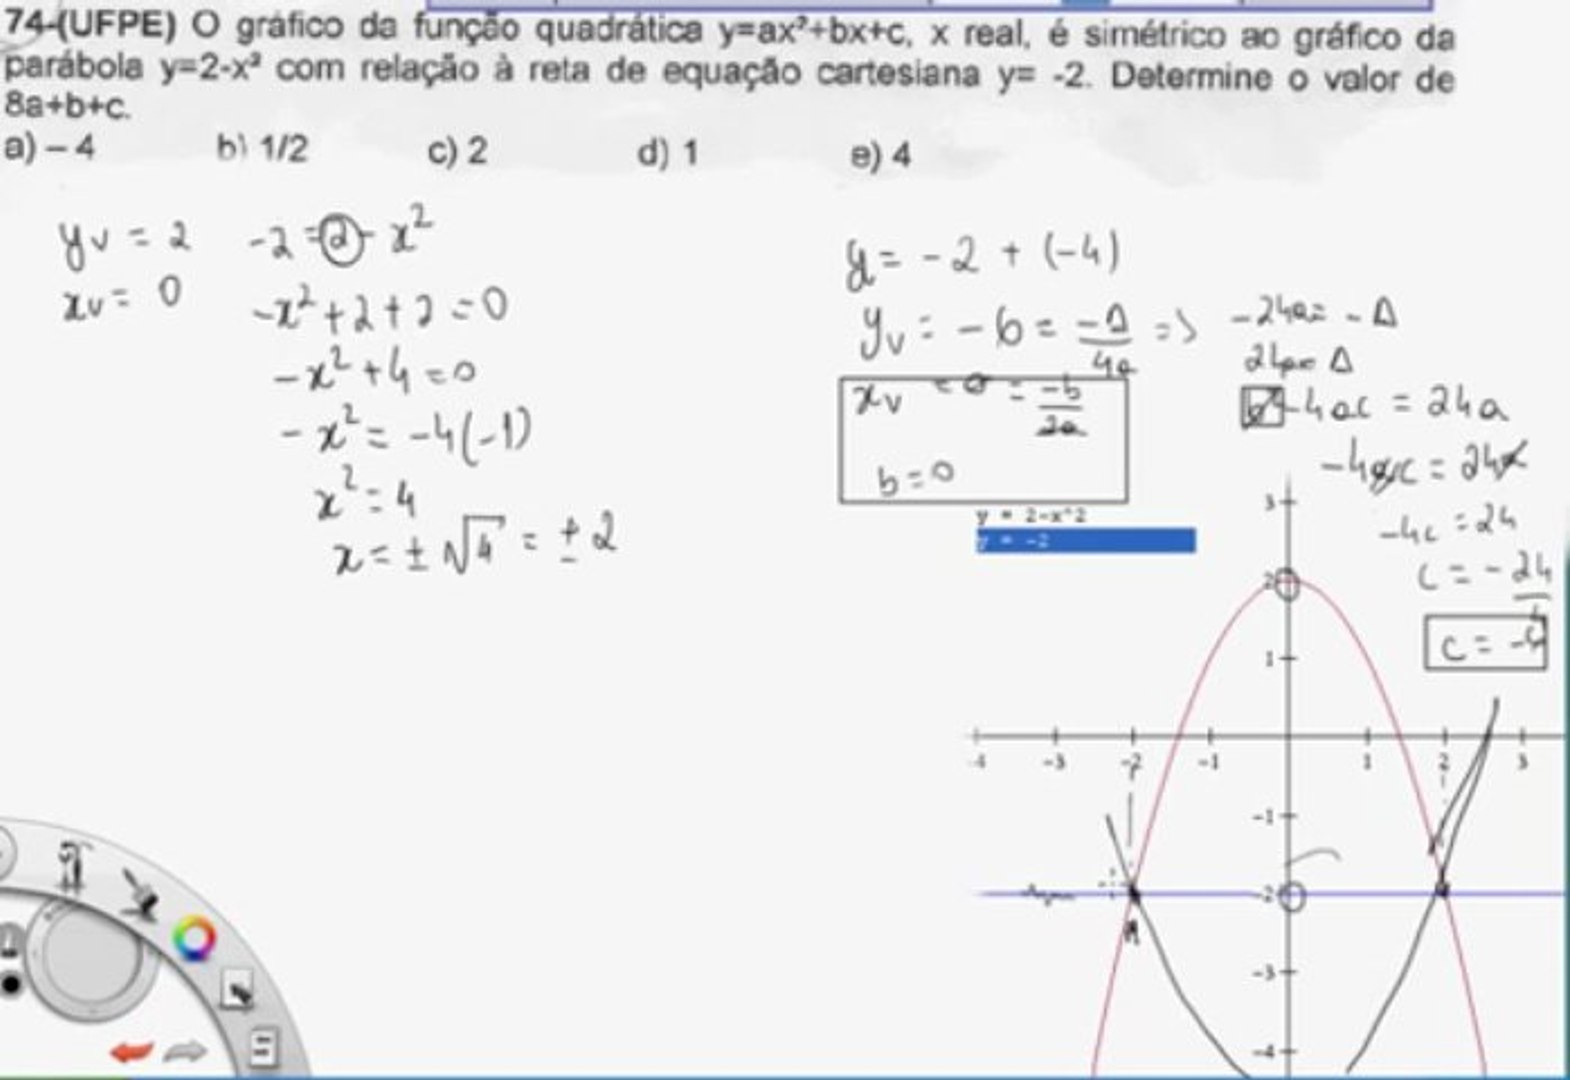 Revisão sobre gráficos de funções e notação científica